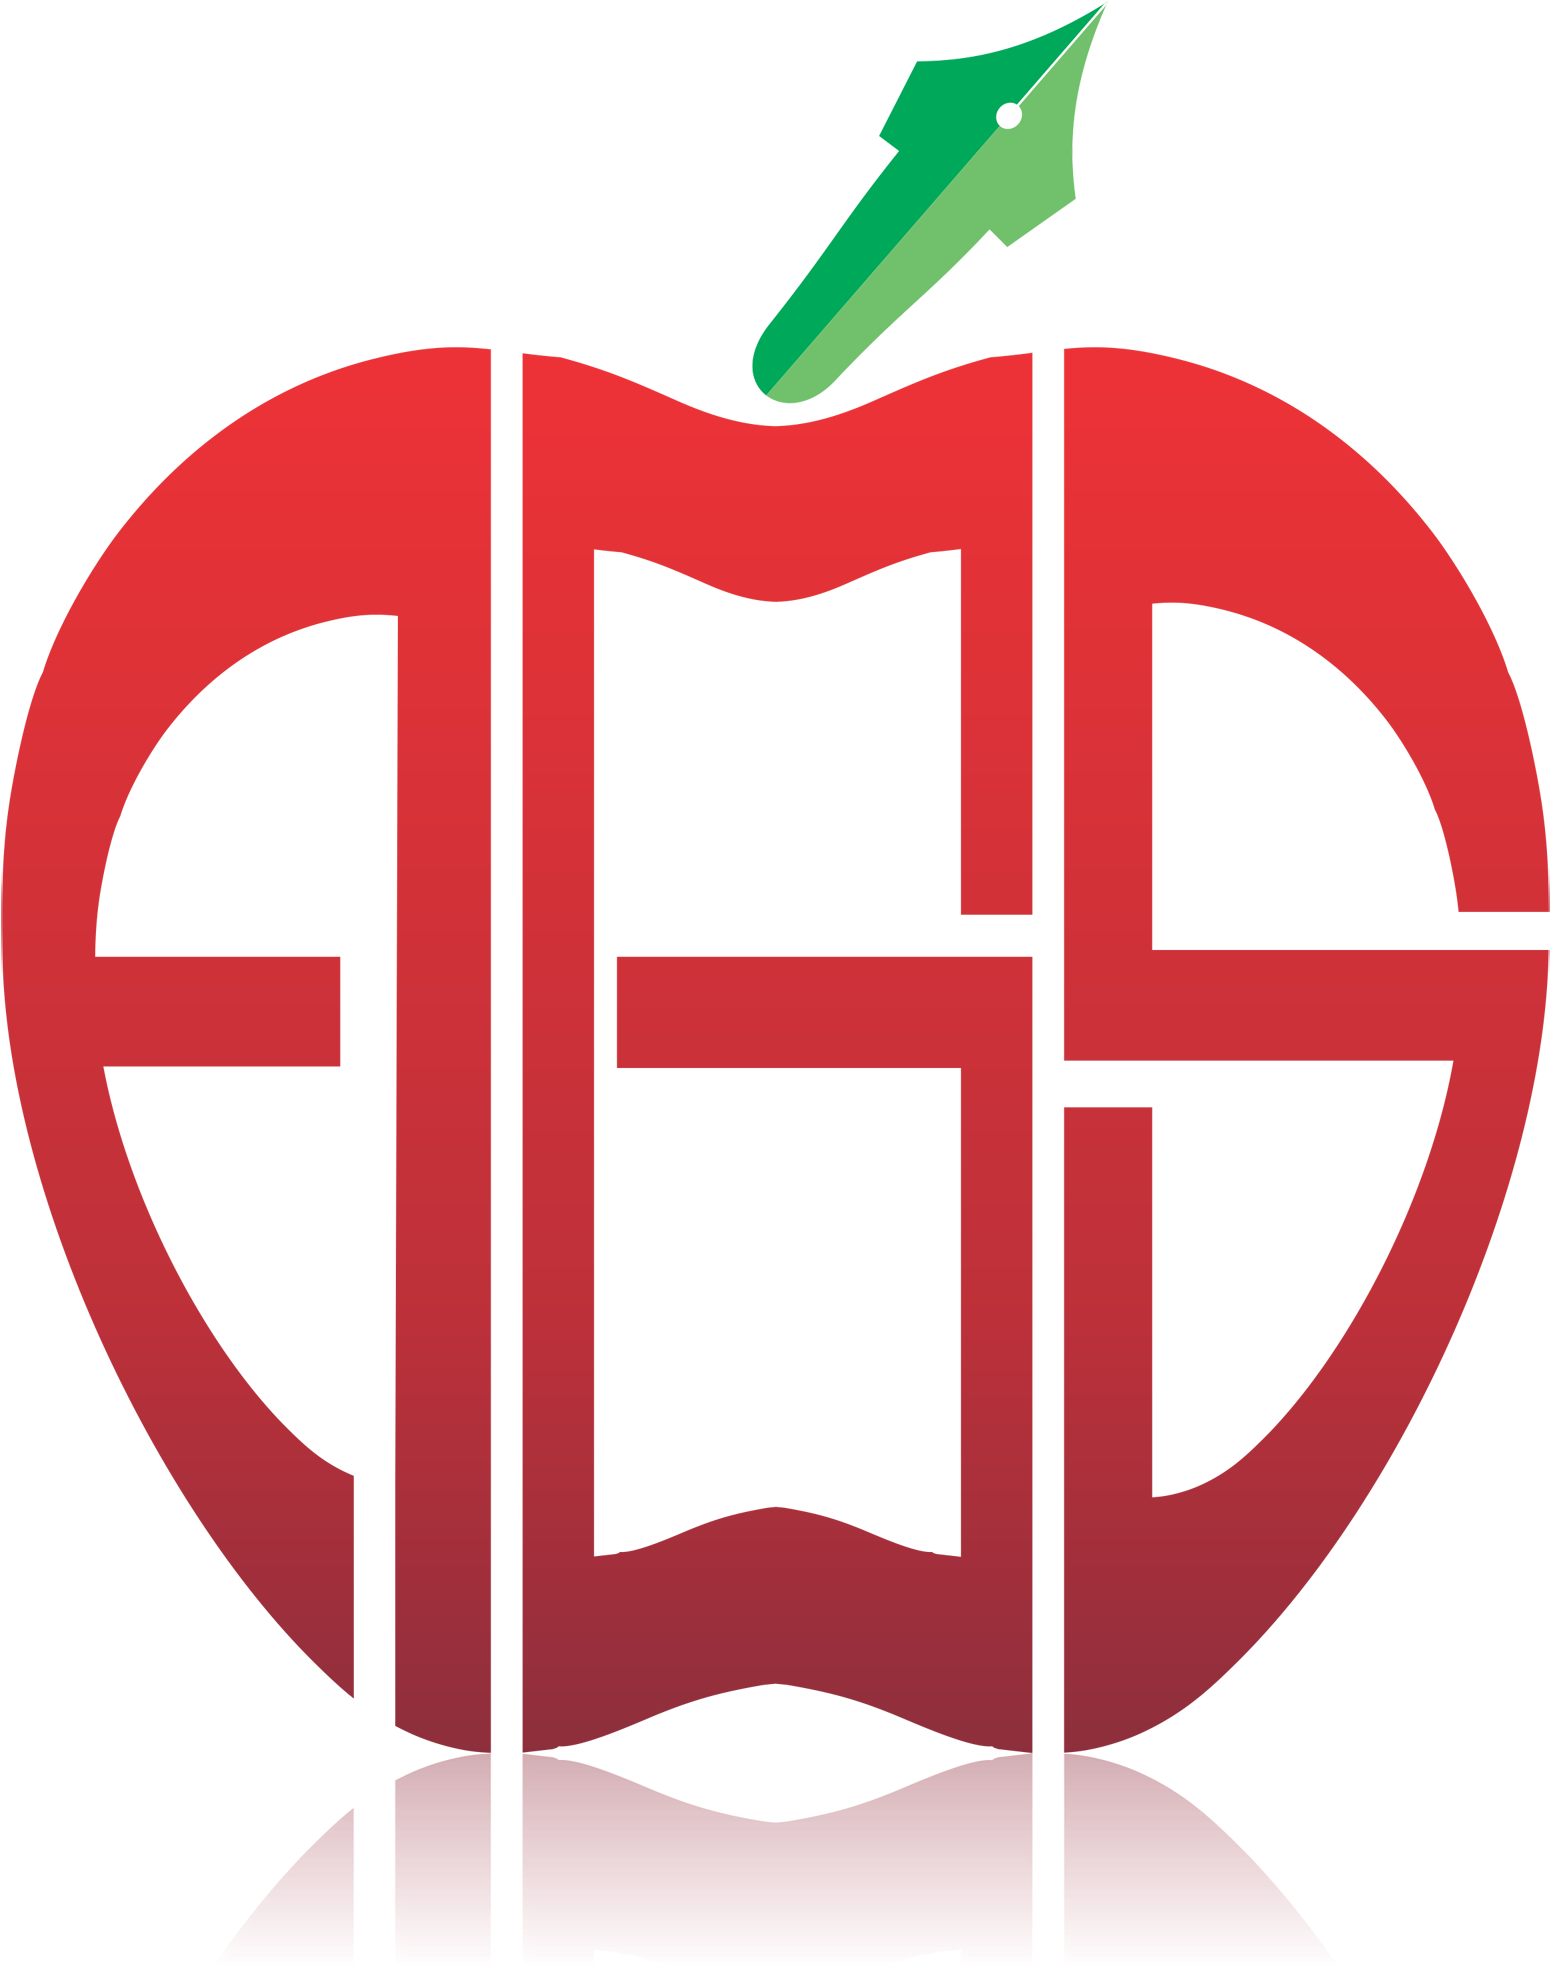 Apple Group Of Schools - Apple Group Of School (1823x2146)